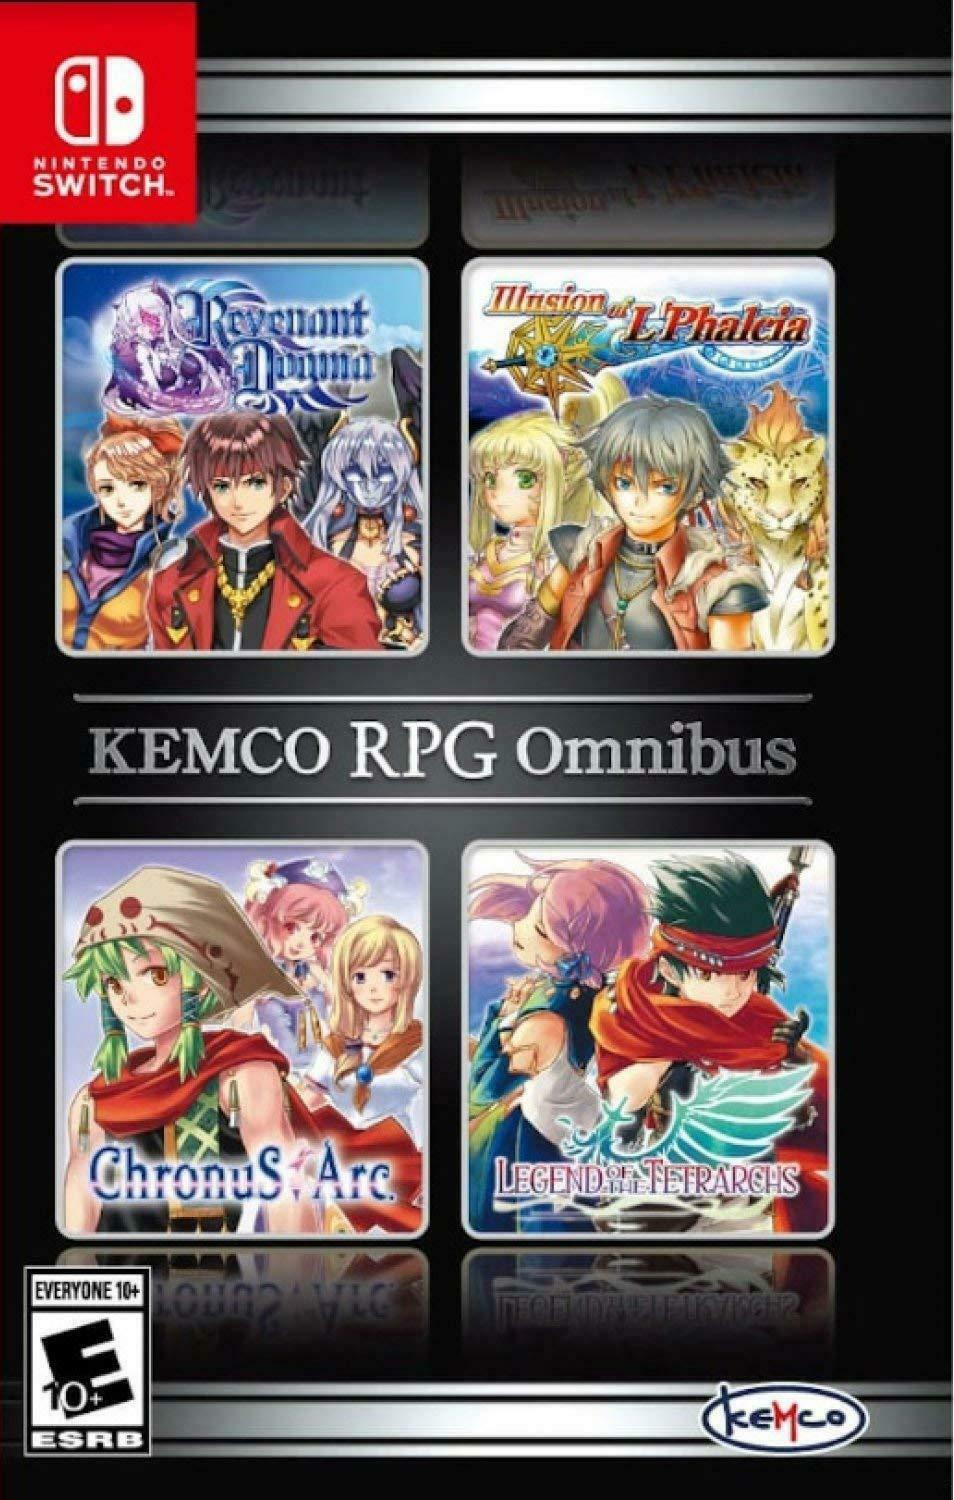 Kemco RPG Omnibus (Nintendo Switch) nuevo - Región libre-254615958573-E-0